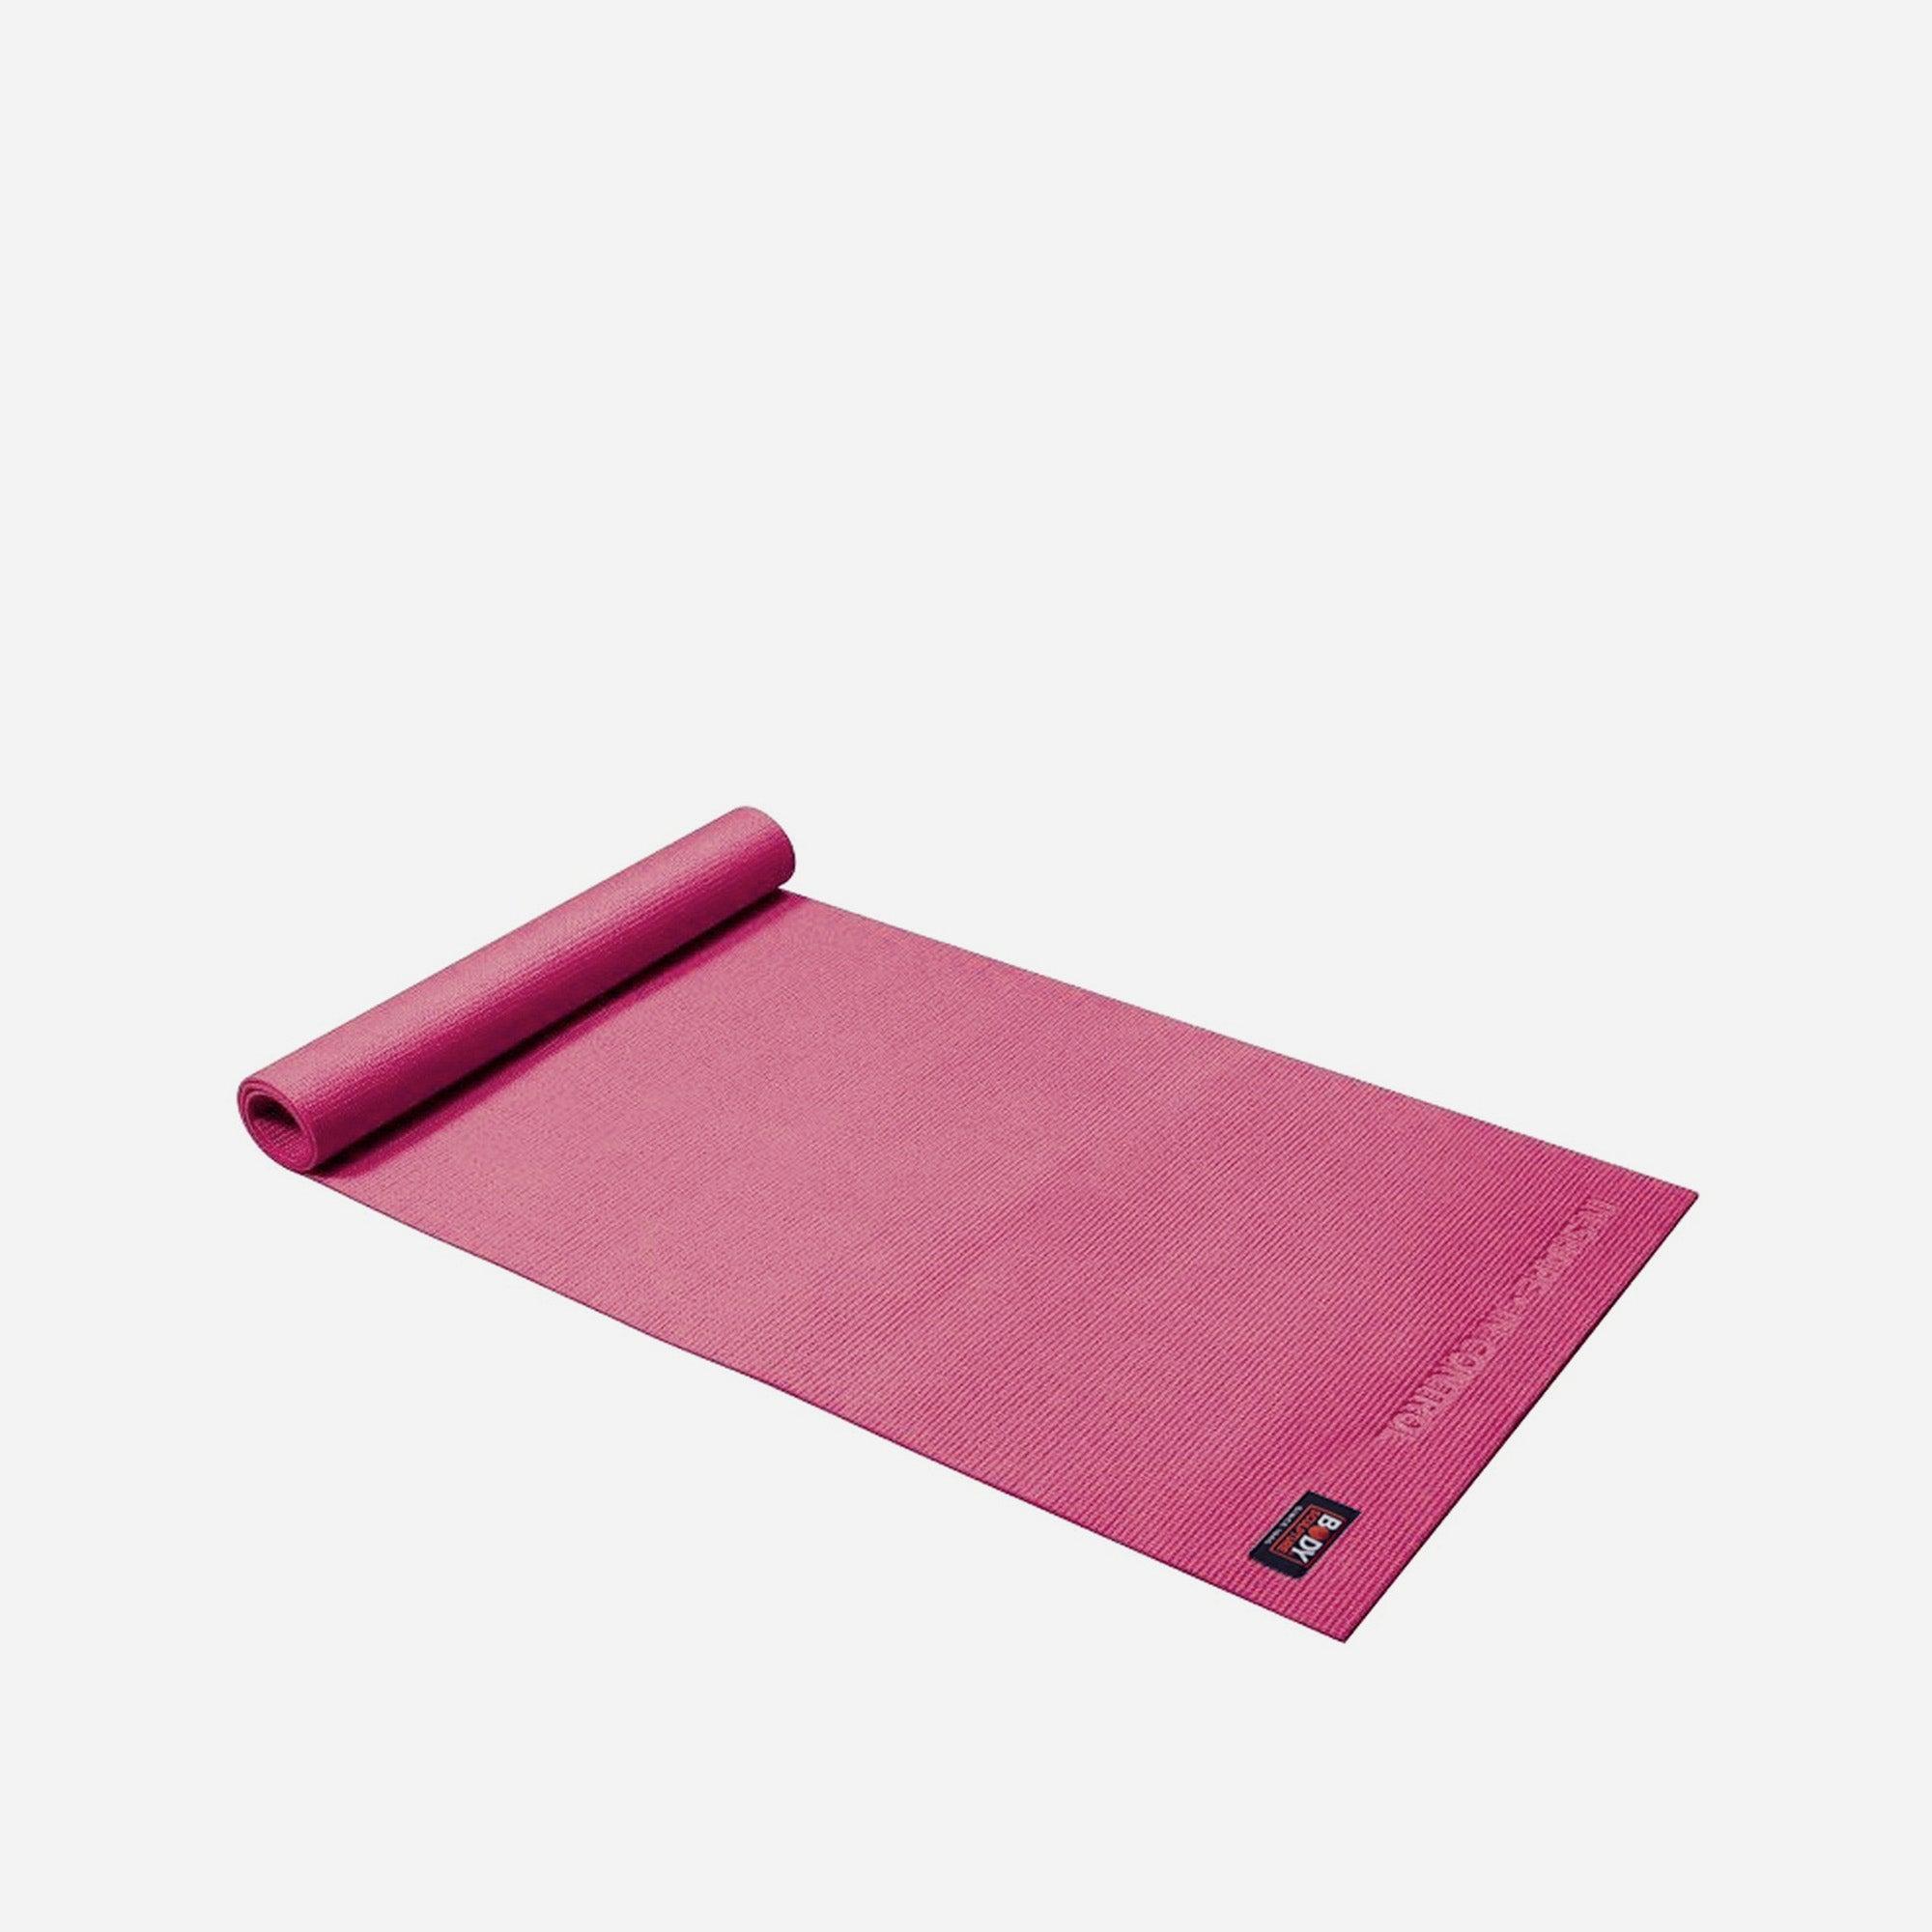 Thảm tập yoga YOGA/EXERCISE MAT BODY SCULPTURE - BB-8300DE-4MM-S (màu ngẫu nhiên)